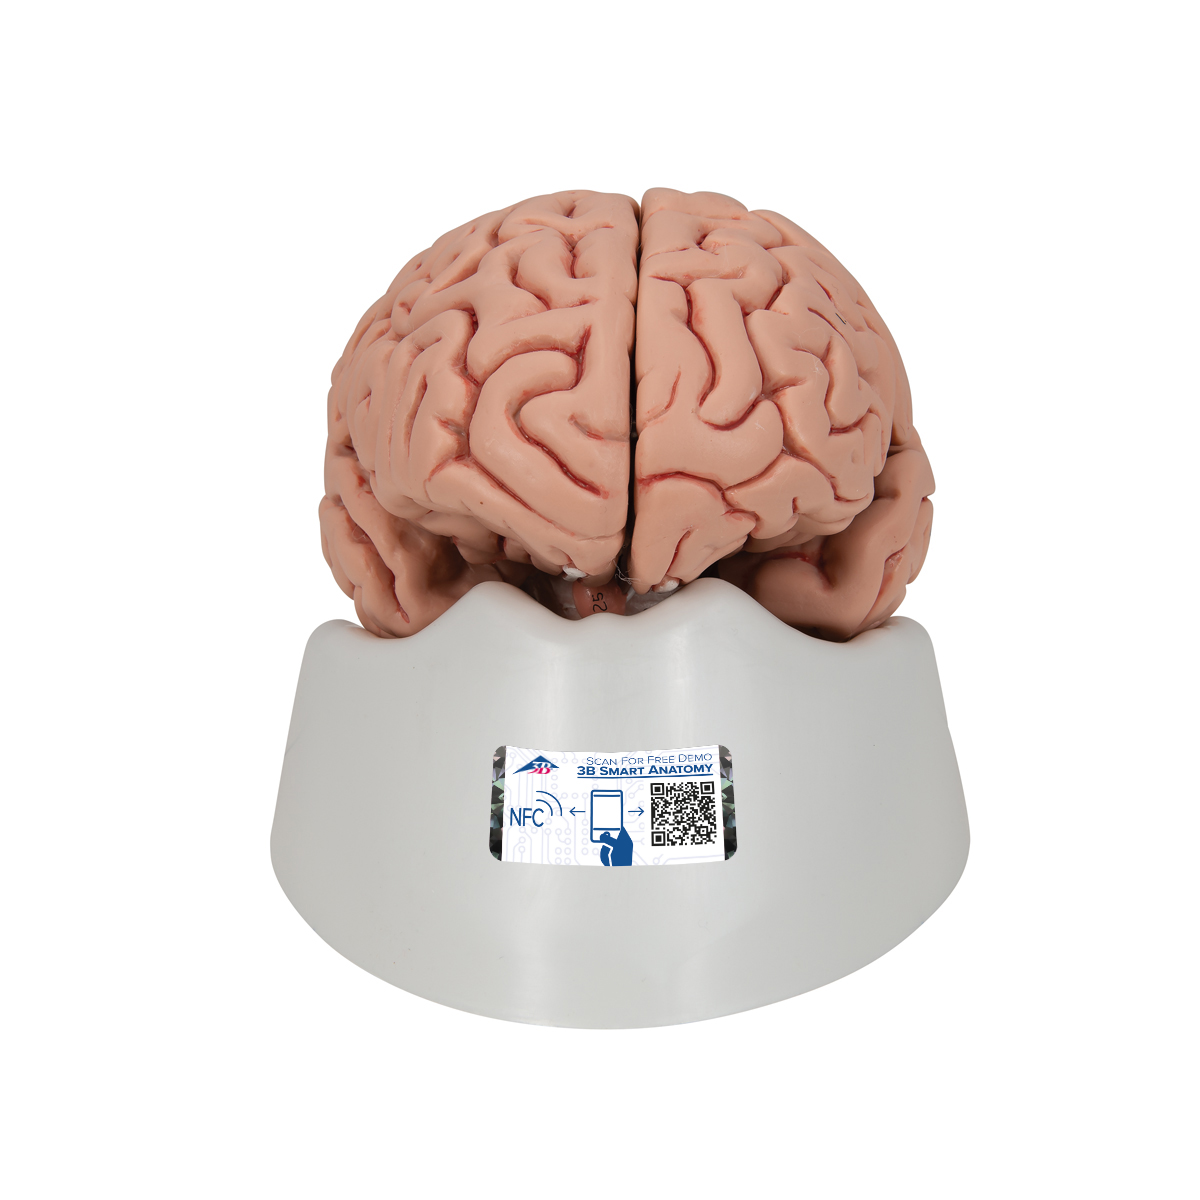 Menschliches Gehirnmodell "Klassik", 5-teilig - 3B Smart Anatomy, Bestellnummer 1000226, C18, 3B Scientific